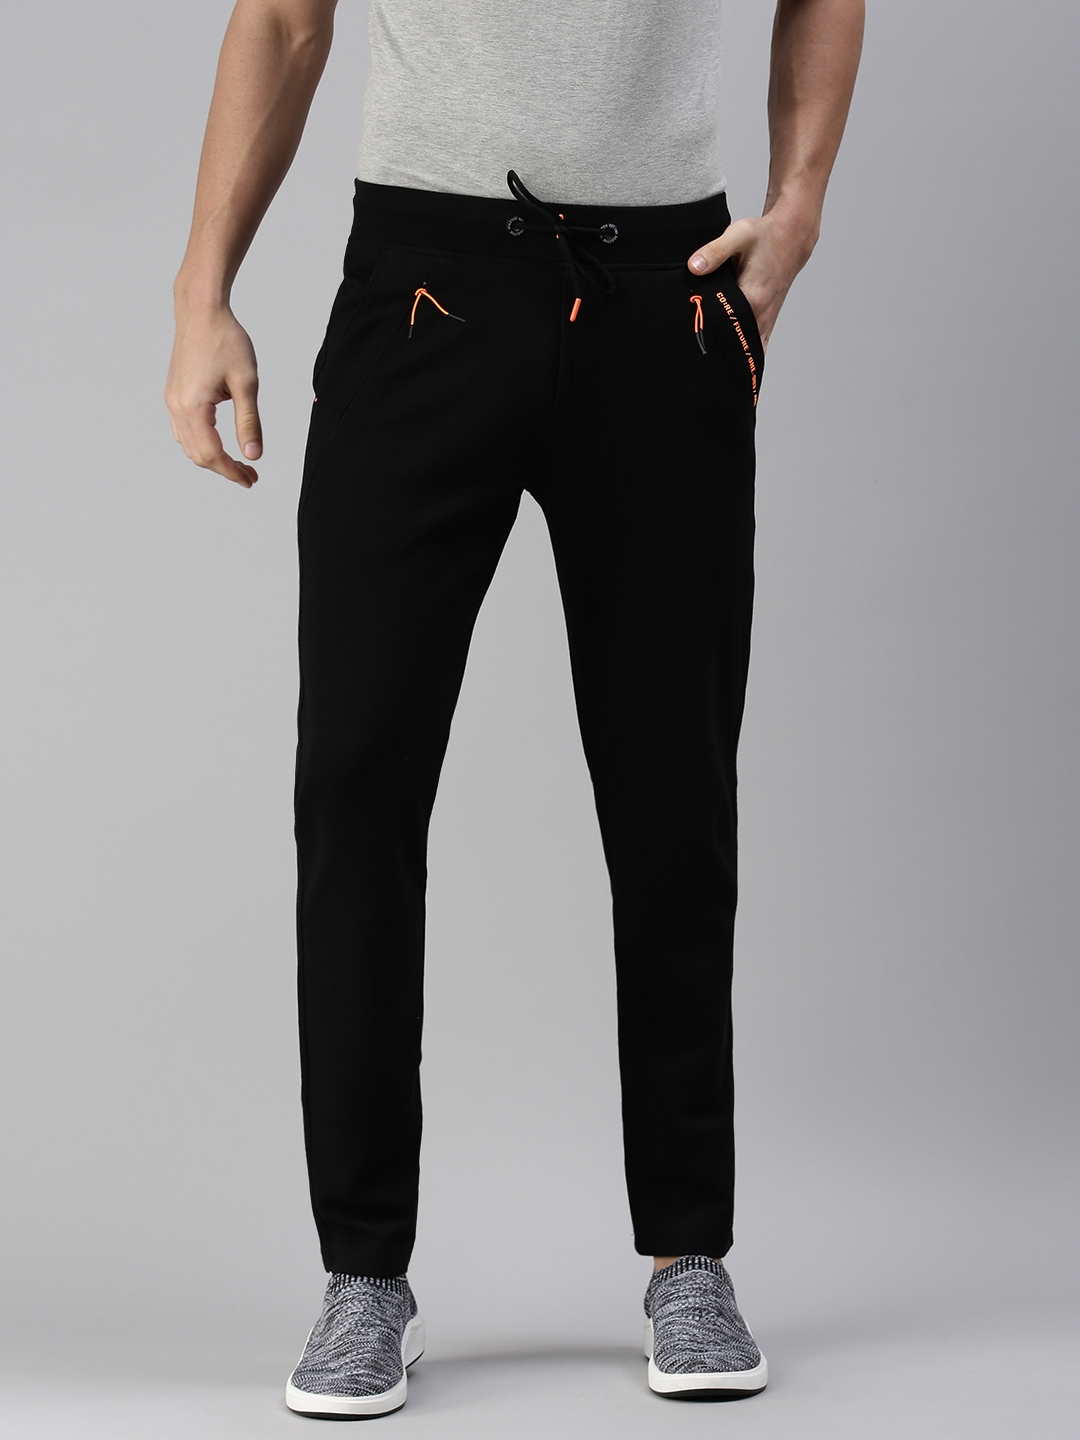 Buy Men's Black-Red Track Pants Online At Best Price: TT Bazaar